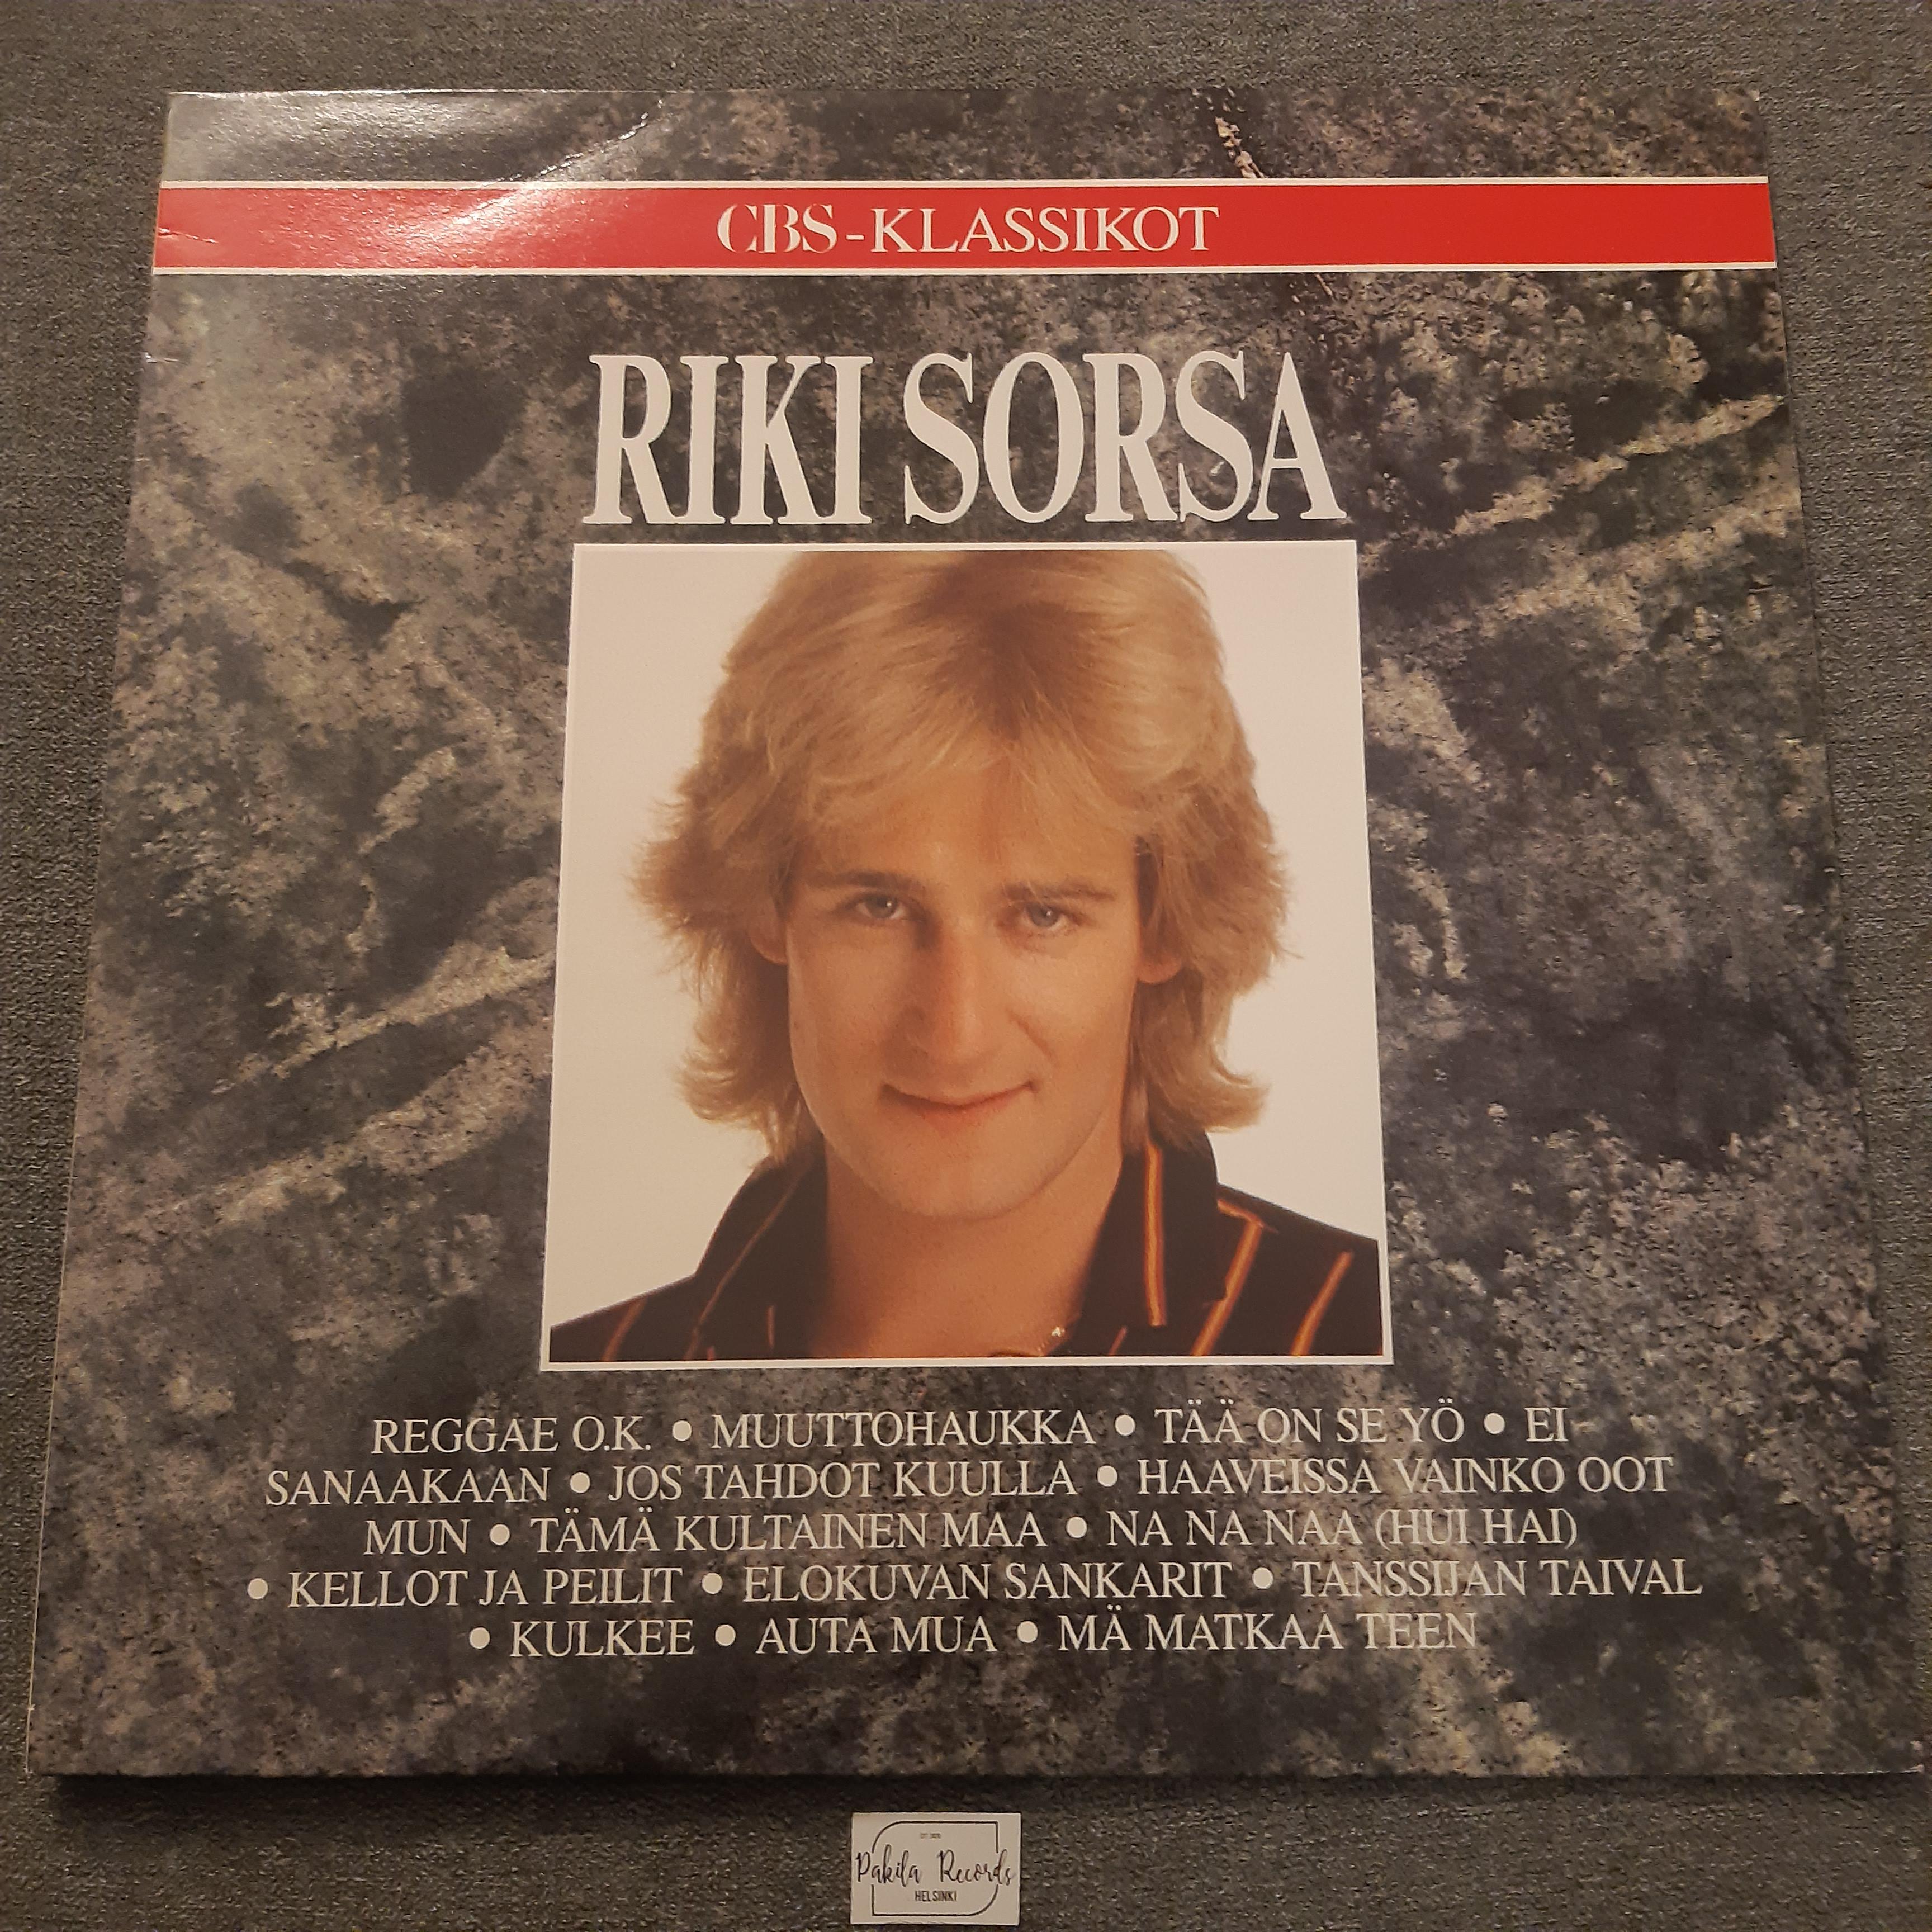 Riki Sorsa - CBS-Klassikot - LP (käytetty)